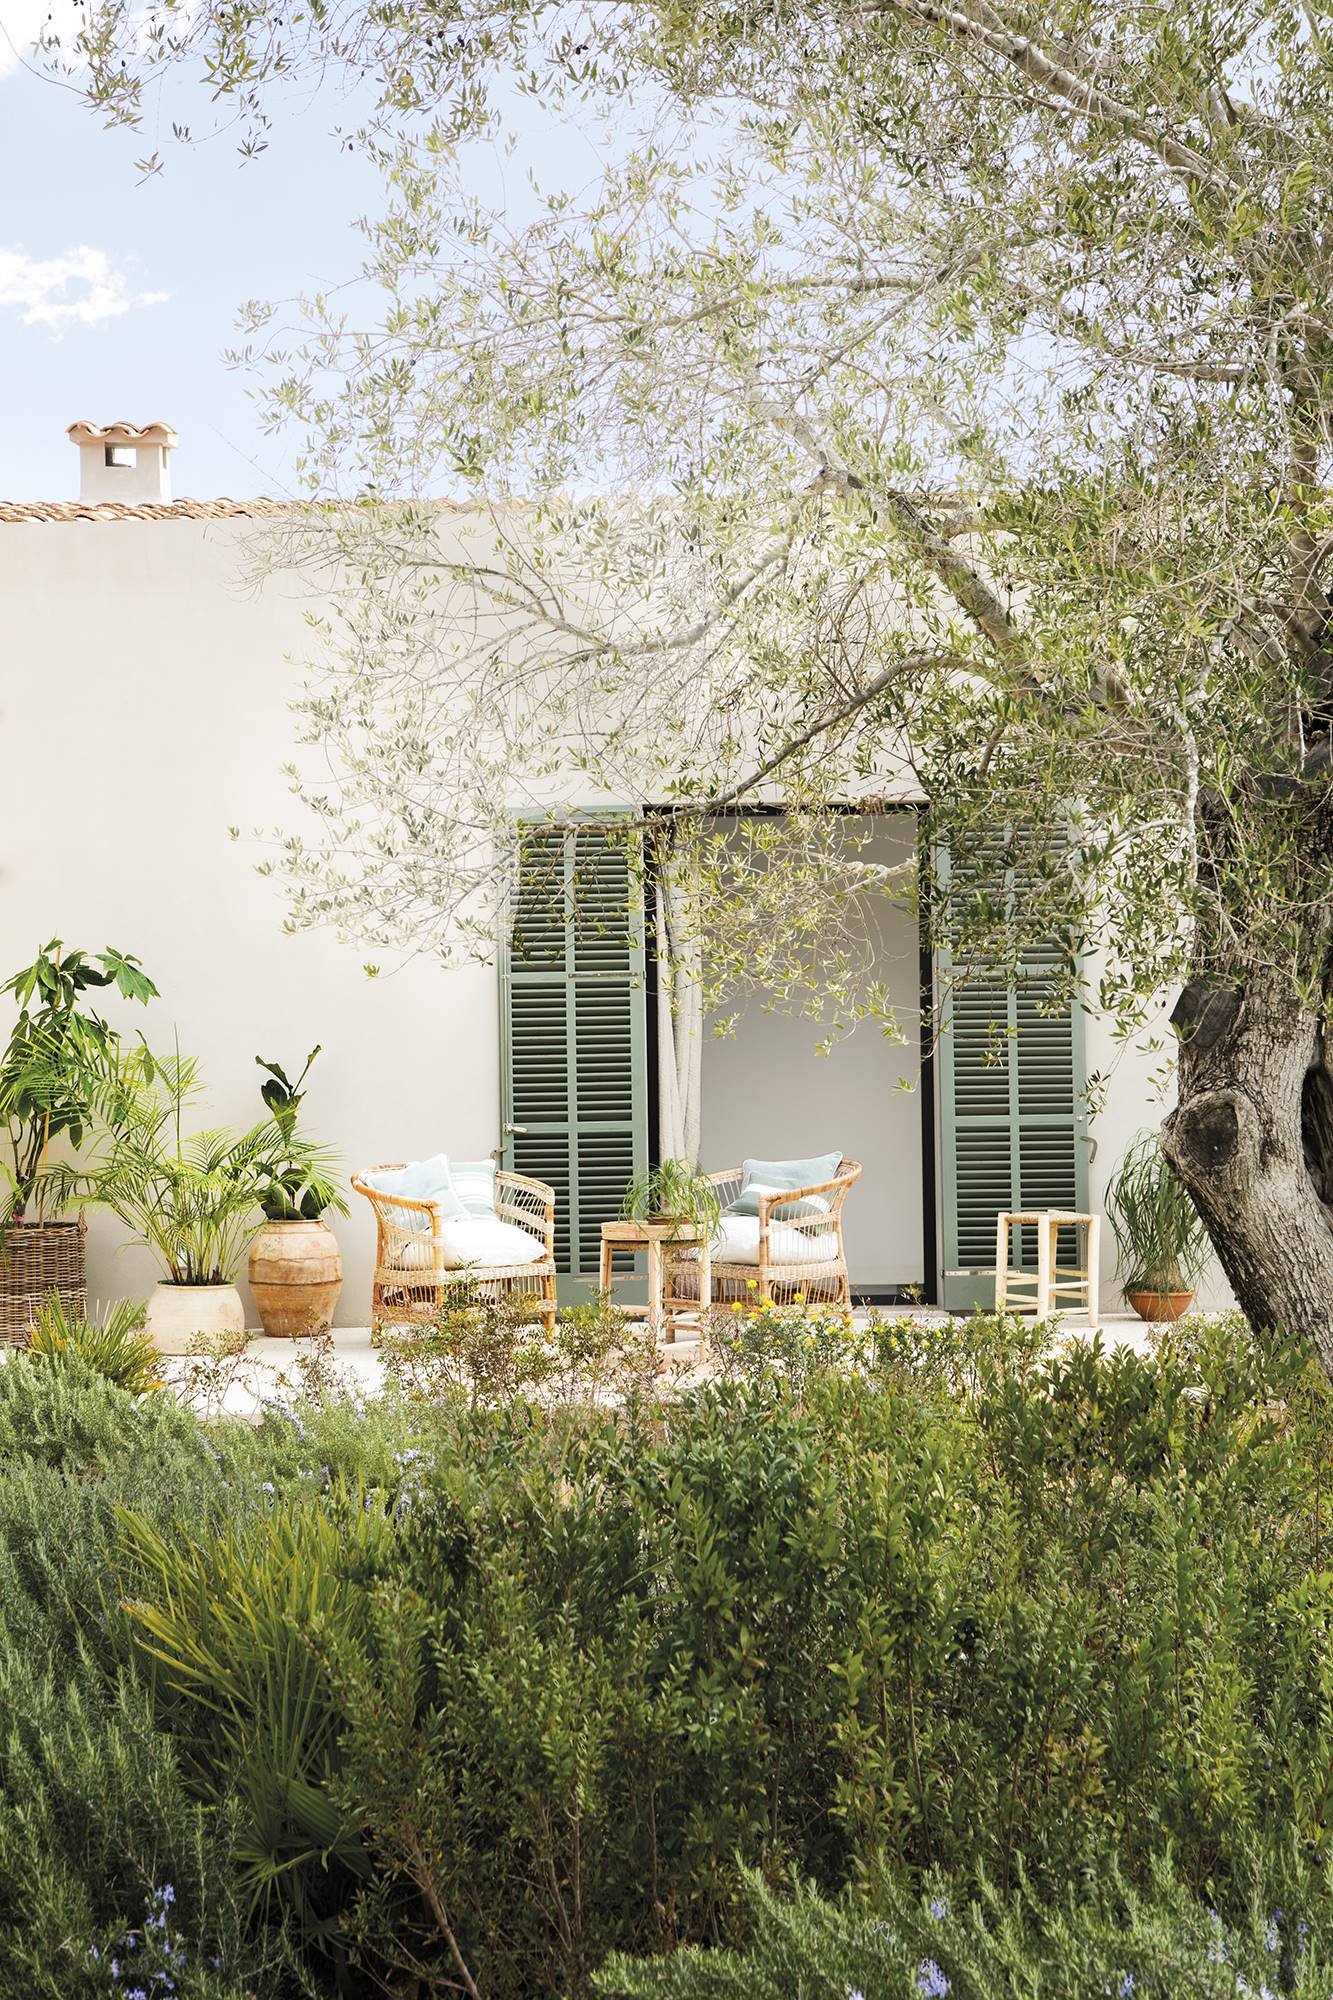 Casa con fachada blanca, puertas verdes y porche con muebles de fibras.